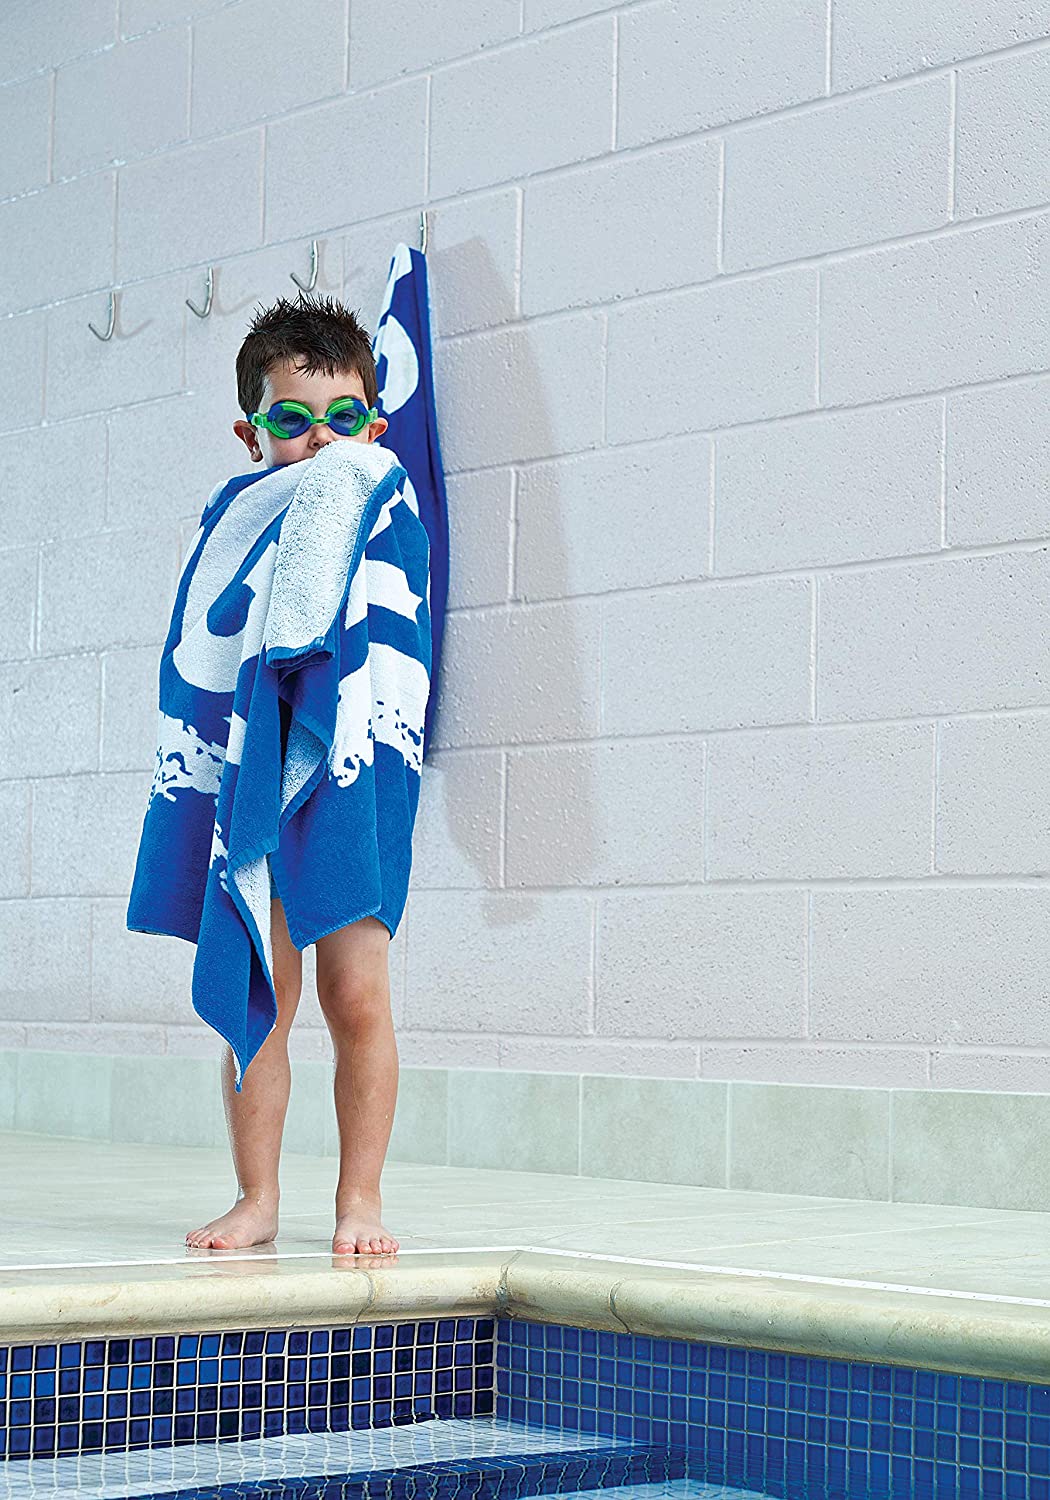 Zoggs Swimming Pool Towel, Blue, 140 x 70 cm - samawa perfumes 